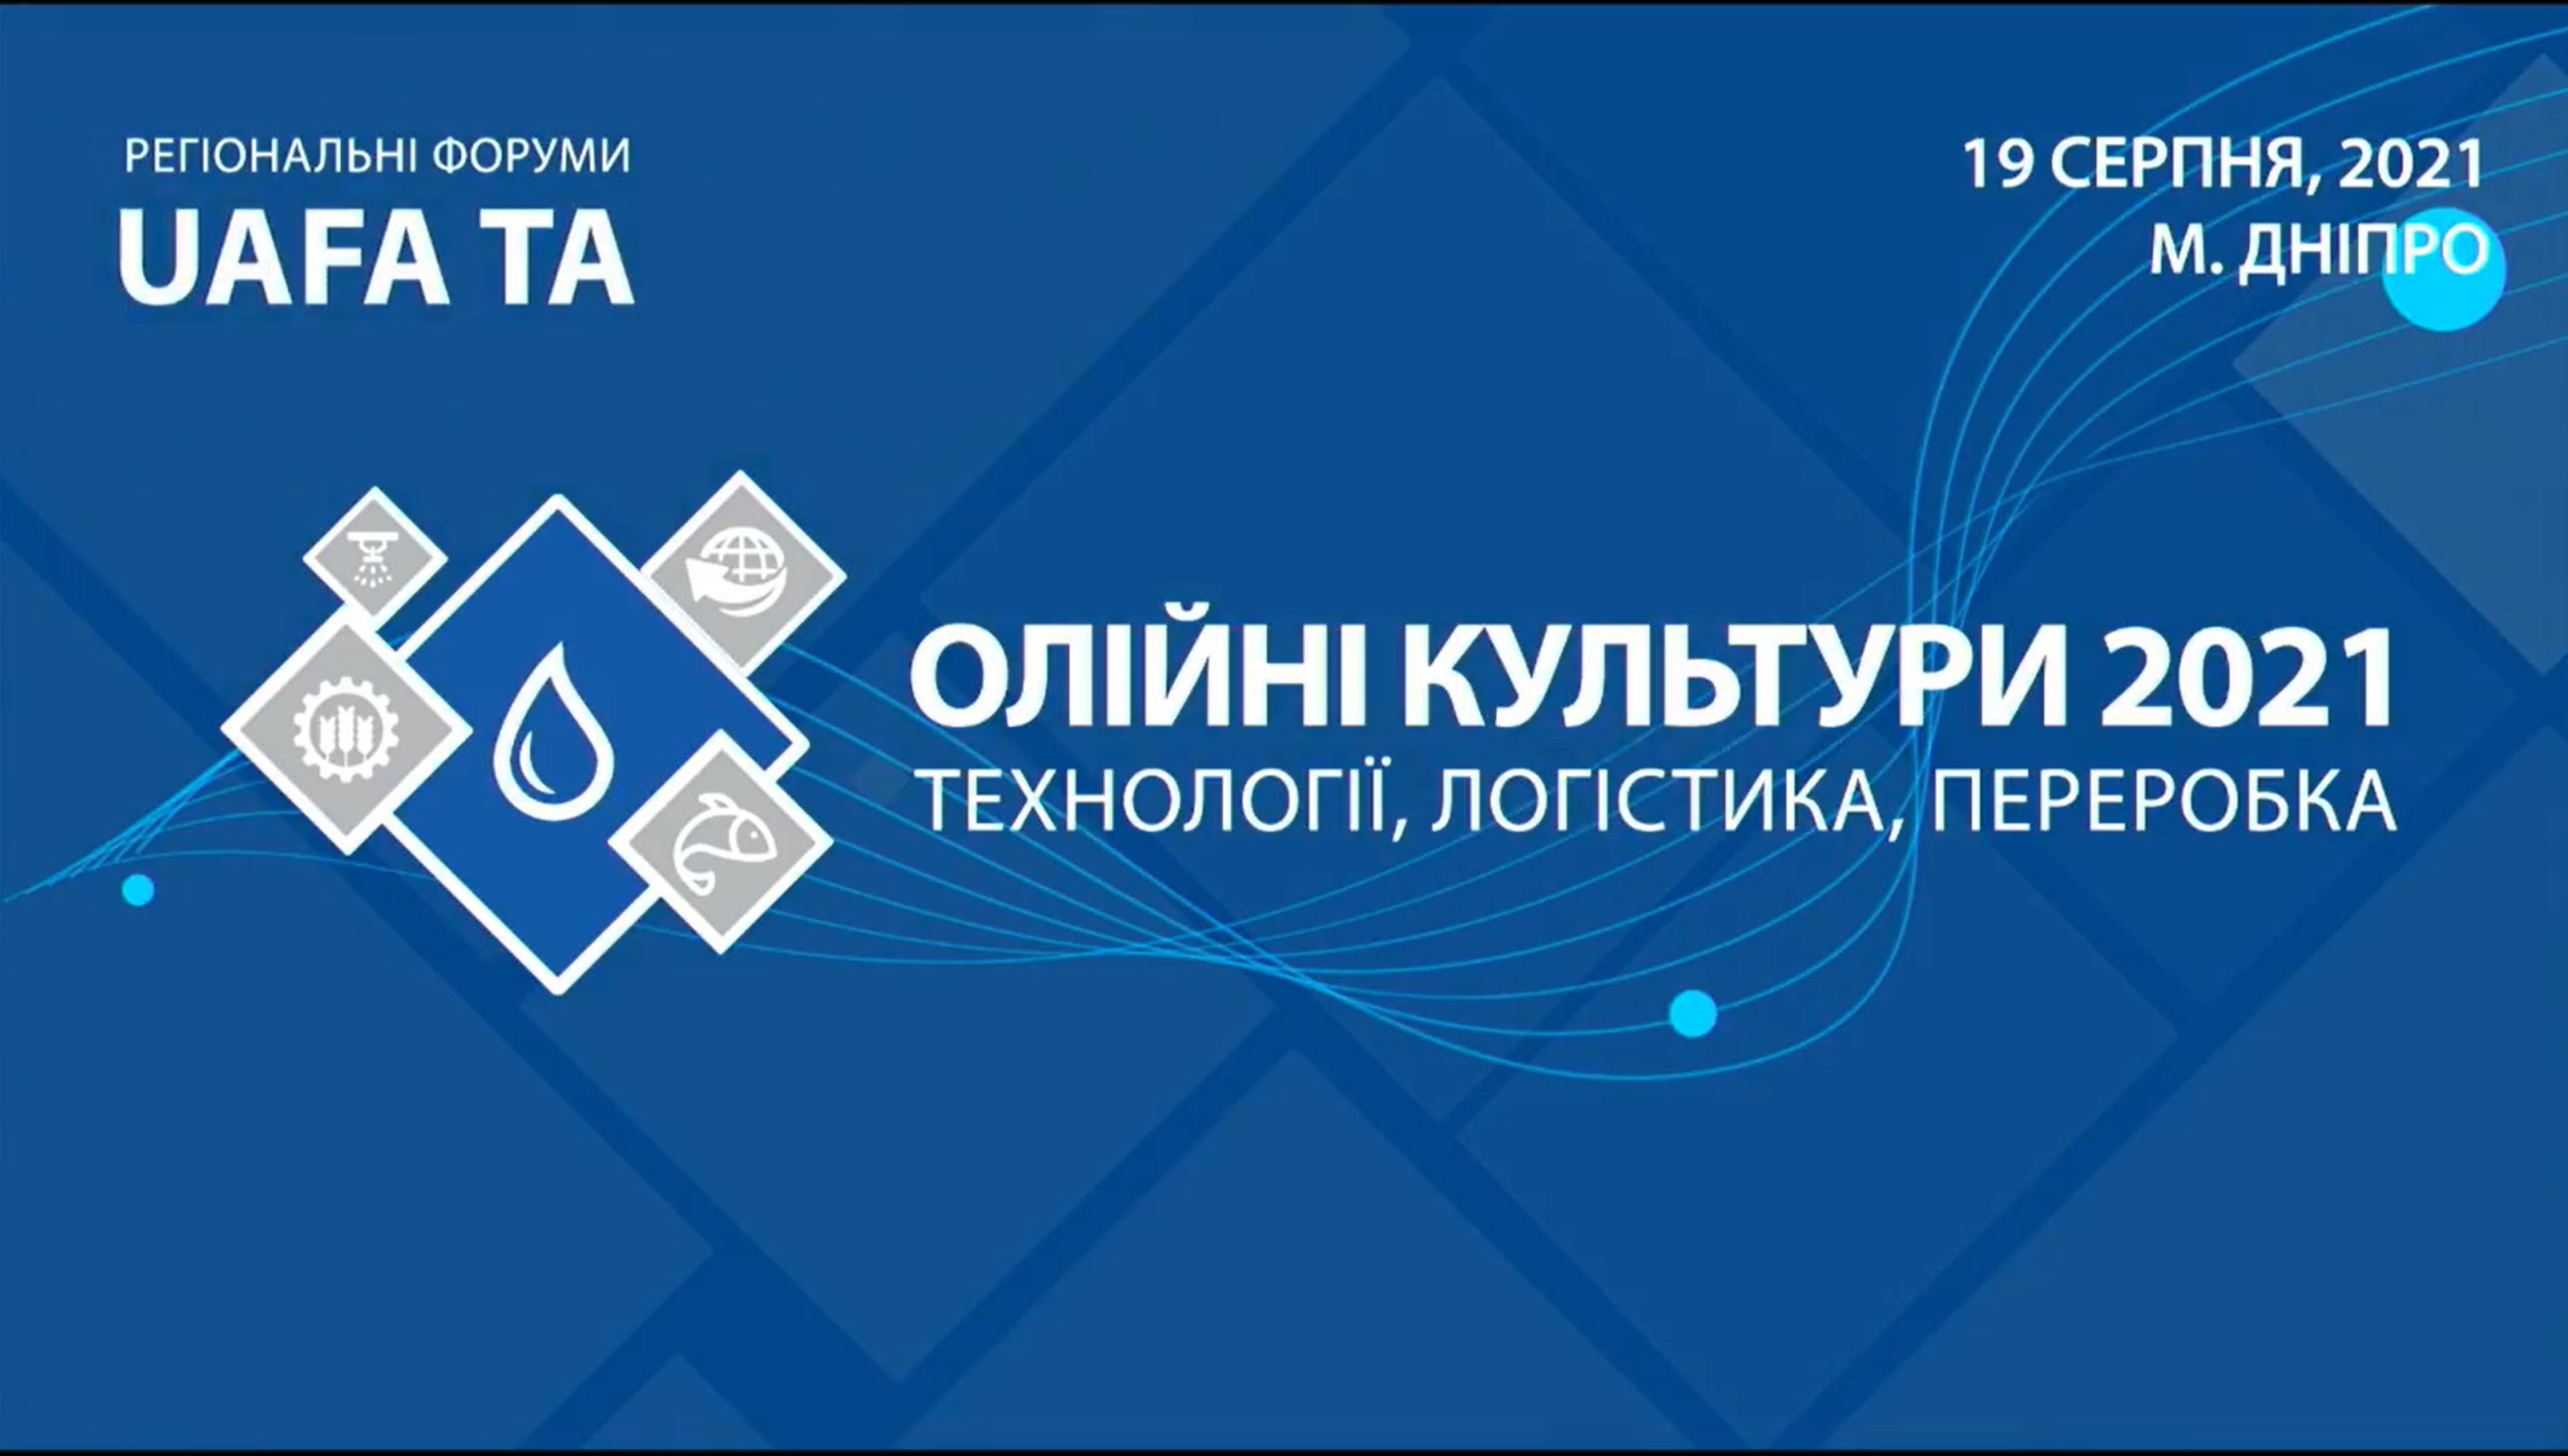 Регіональний форум UAFA TA  - Олійні культури 2021:  технології, логістика, переробка